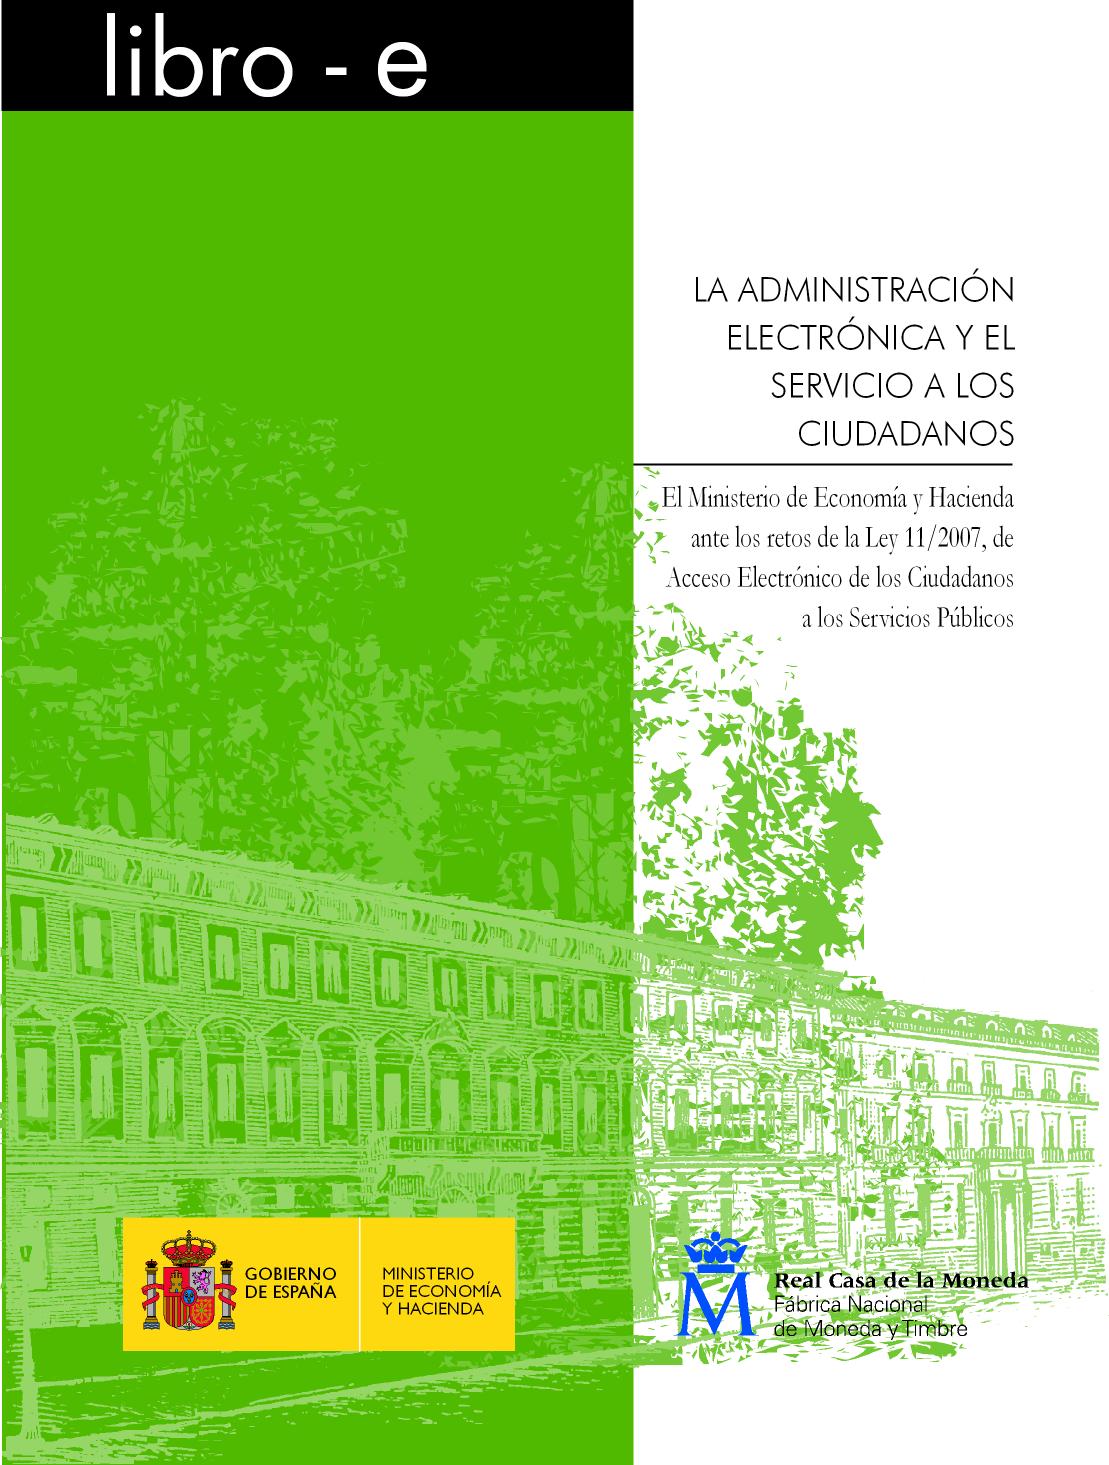 Portada del libro: ADMINISTRACIÓN ELECTRÓNICA Y EL SERVICIO A LOS CIUDADANOS,LA. EDICIÓN 2009. libro-e